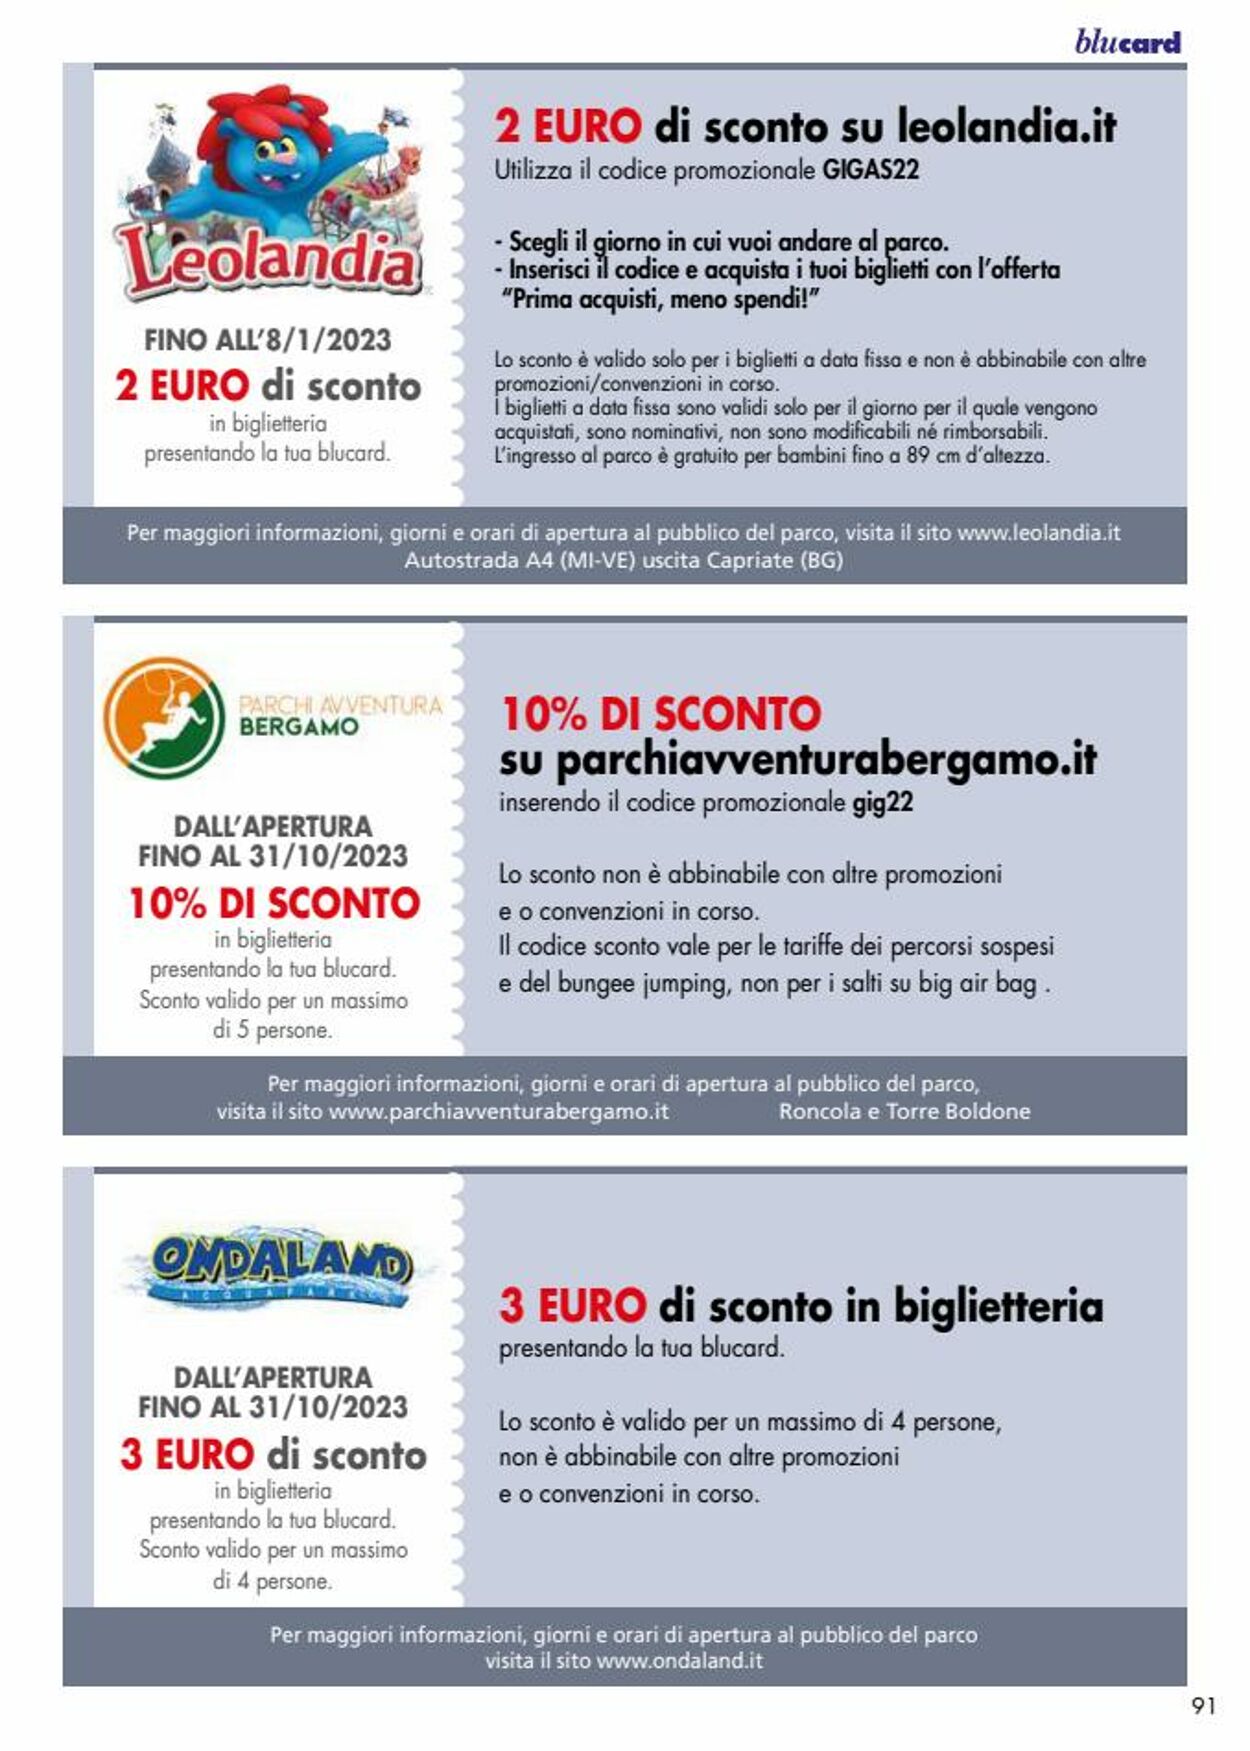 Volantino Il gigante 19.04.2022 - 26.03.2023